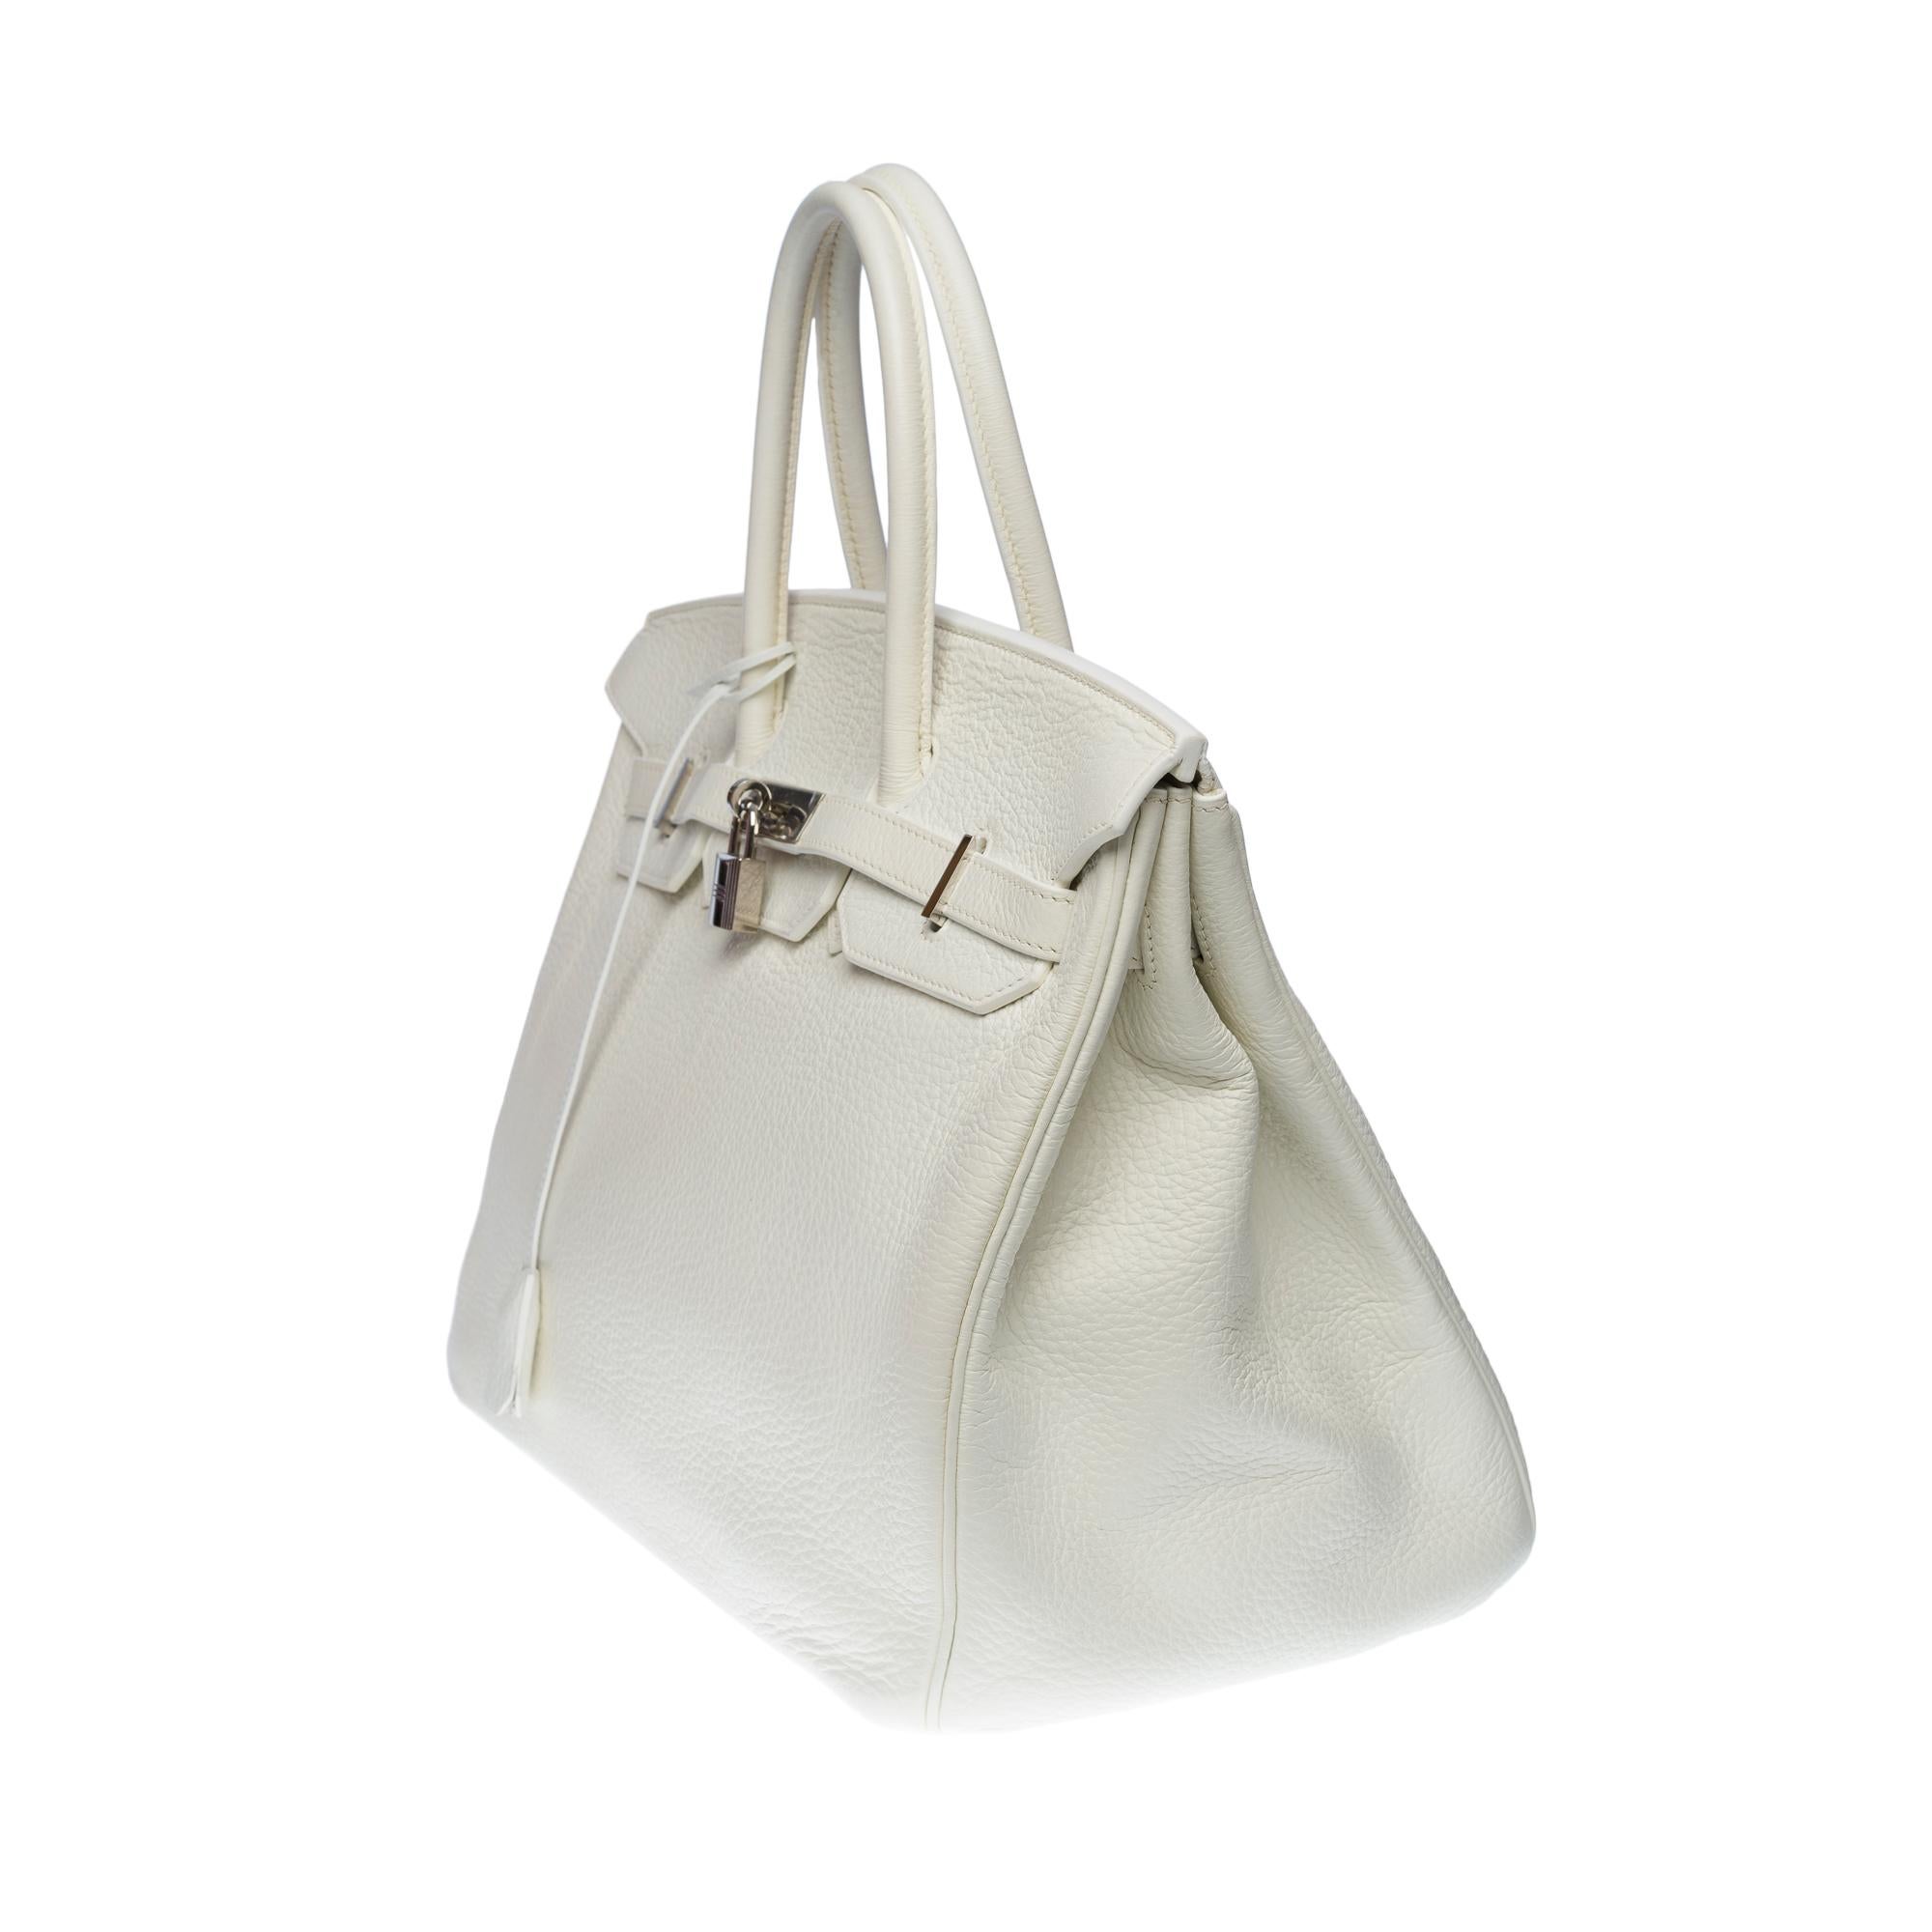 Women's or Men's Stunning Hermès Birkin 35 handbag in white Togo leather, SHW